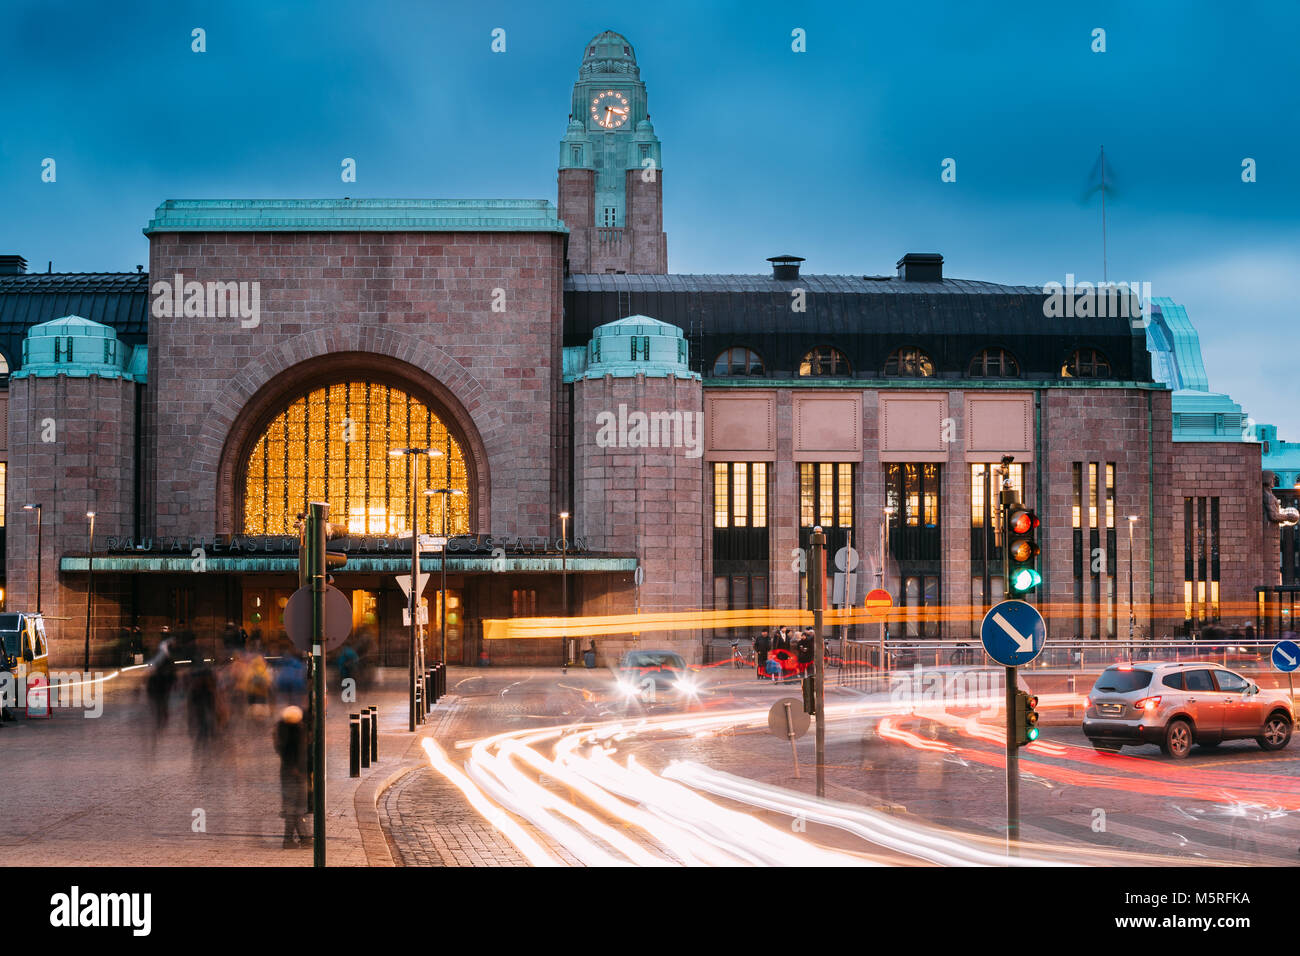 Helsinki, Finlande - le 7 décembre 2016 : Le trafic de nuit dans Postgatan rue près de la Gare Centrale d'Helsinki dans l'éclairage du soir ou de nuit. Statio Banque D'Images